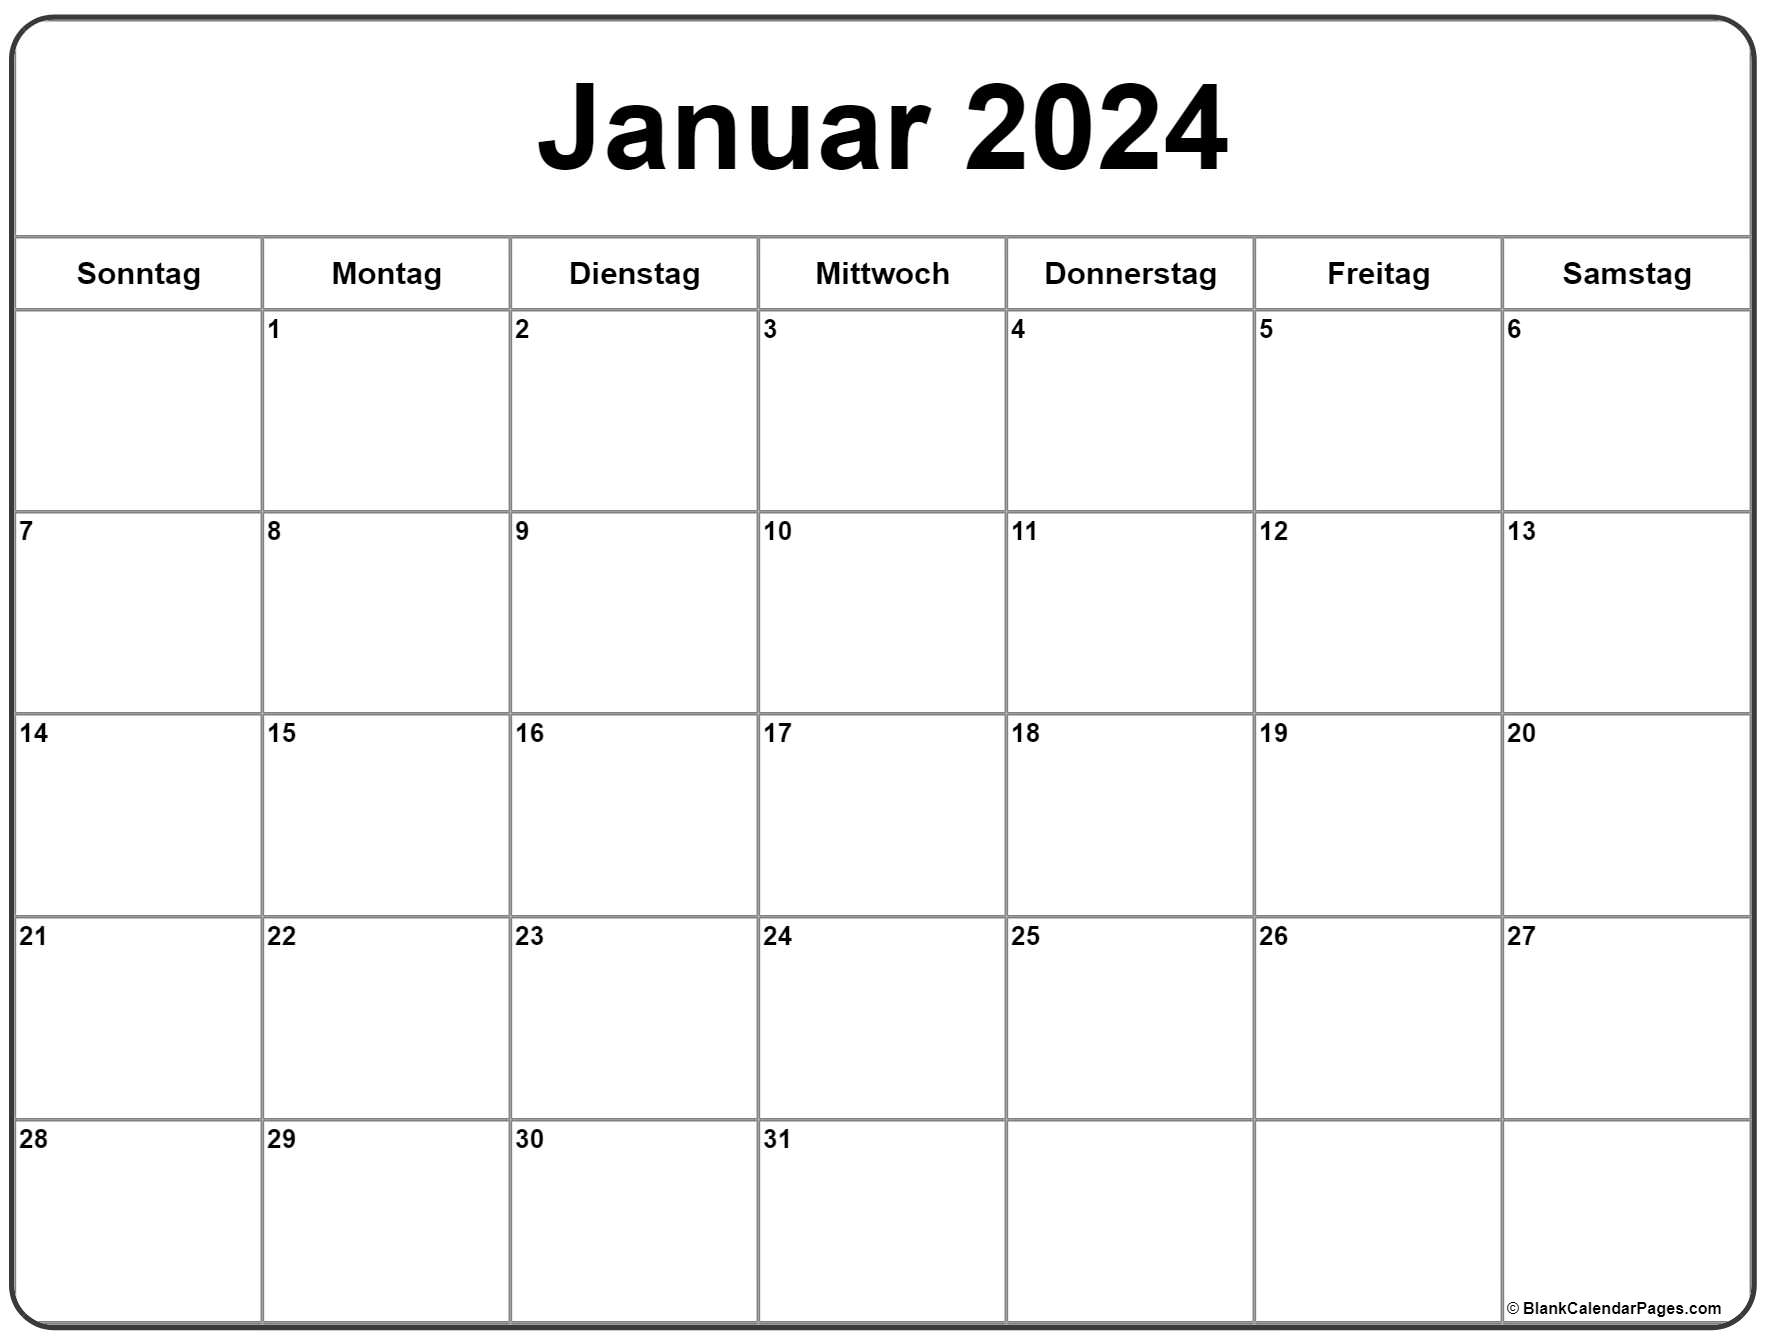  Januar  2022  kalender  kalender  2022 